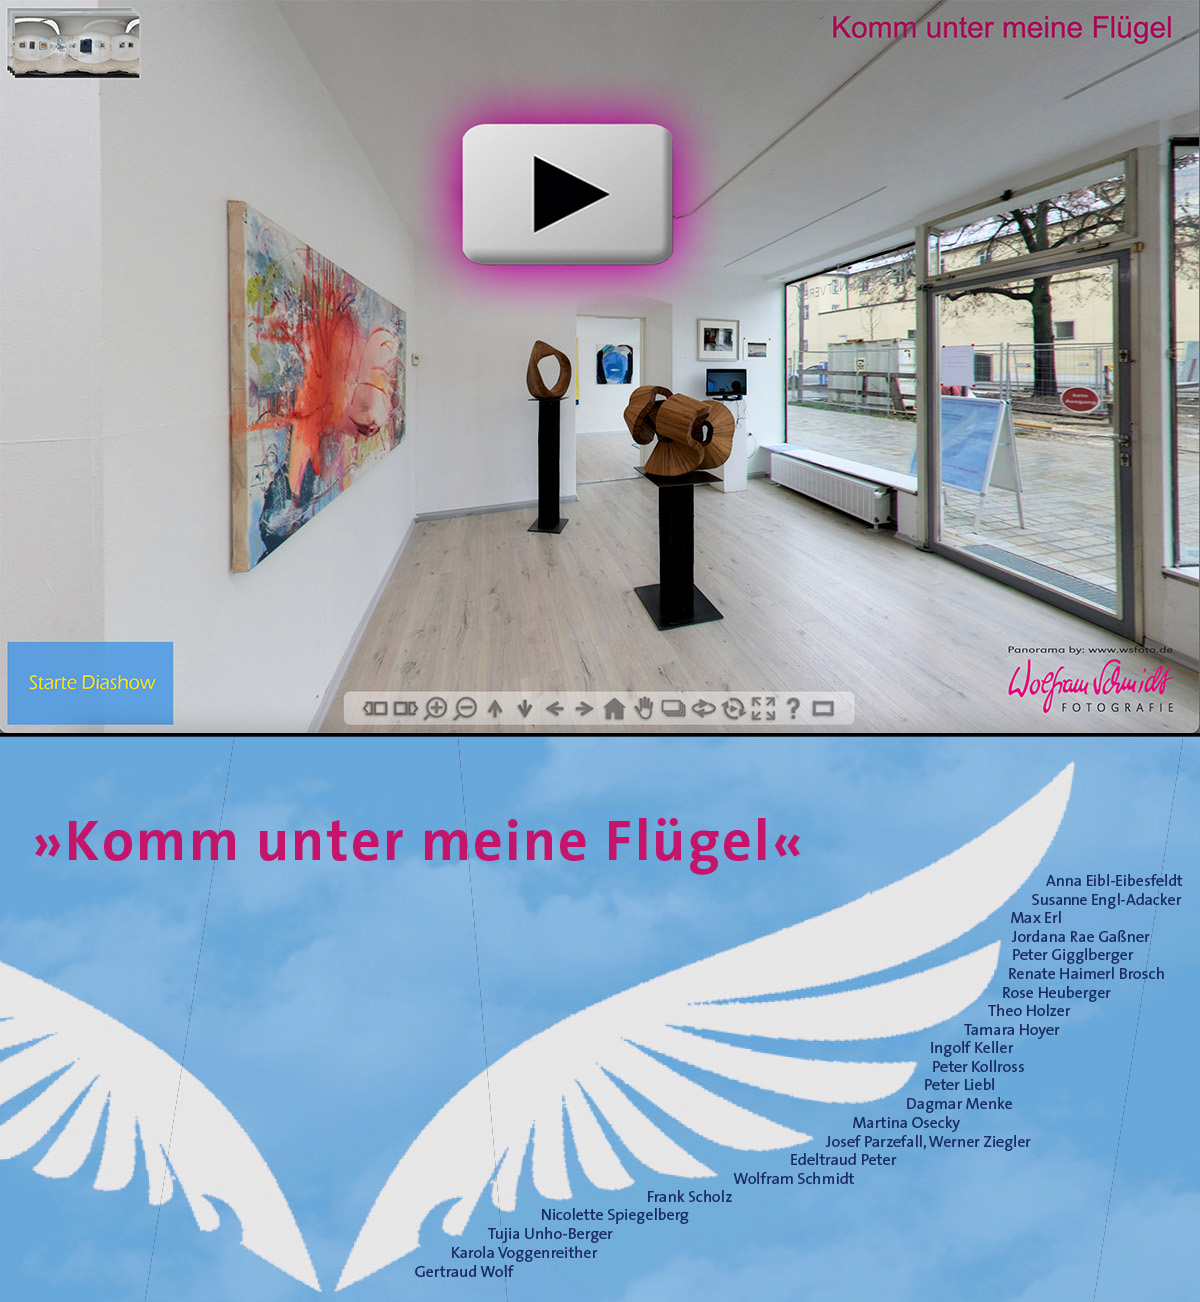 Komm unter meine Flügel, Jahresausstellung 2021 der Mitglieder Neuer Kunstverein Regensburg e.V.